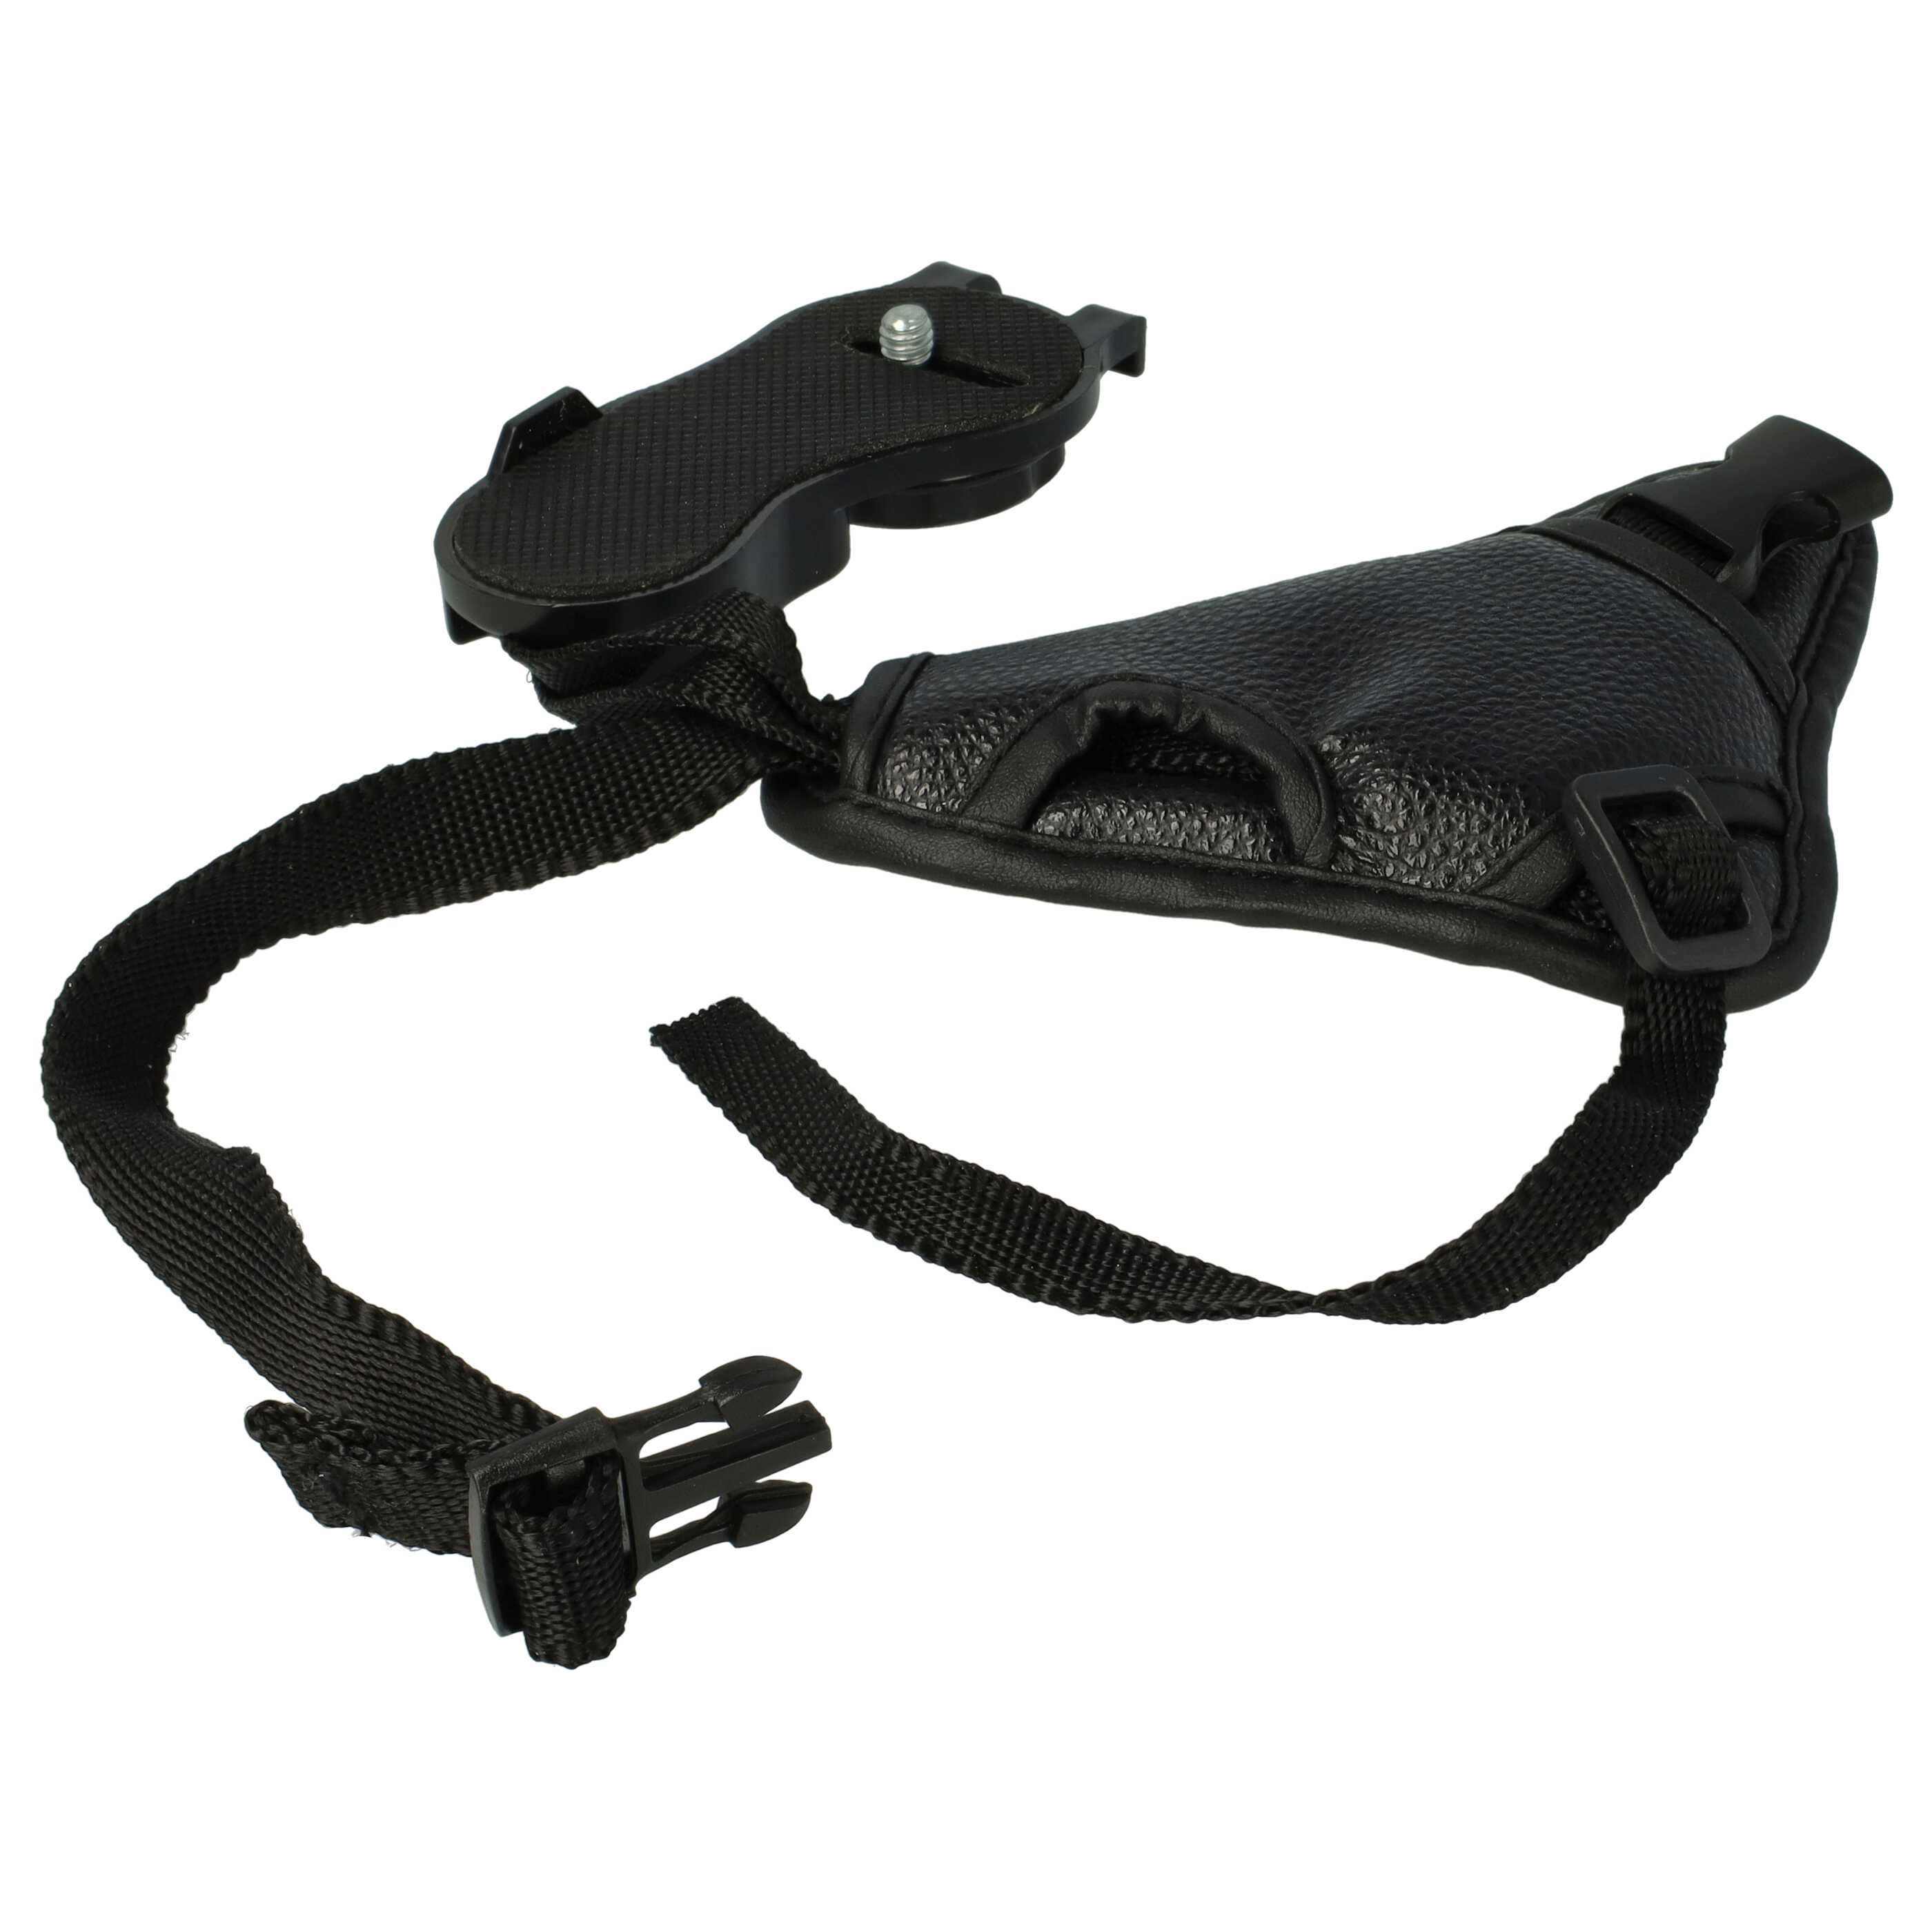 Handschlaufe mit Stativgewinde gepolstert ergonomische Form schwarz für Kamera, DSLR, Kompaktkamera wie Nikon,